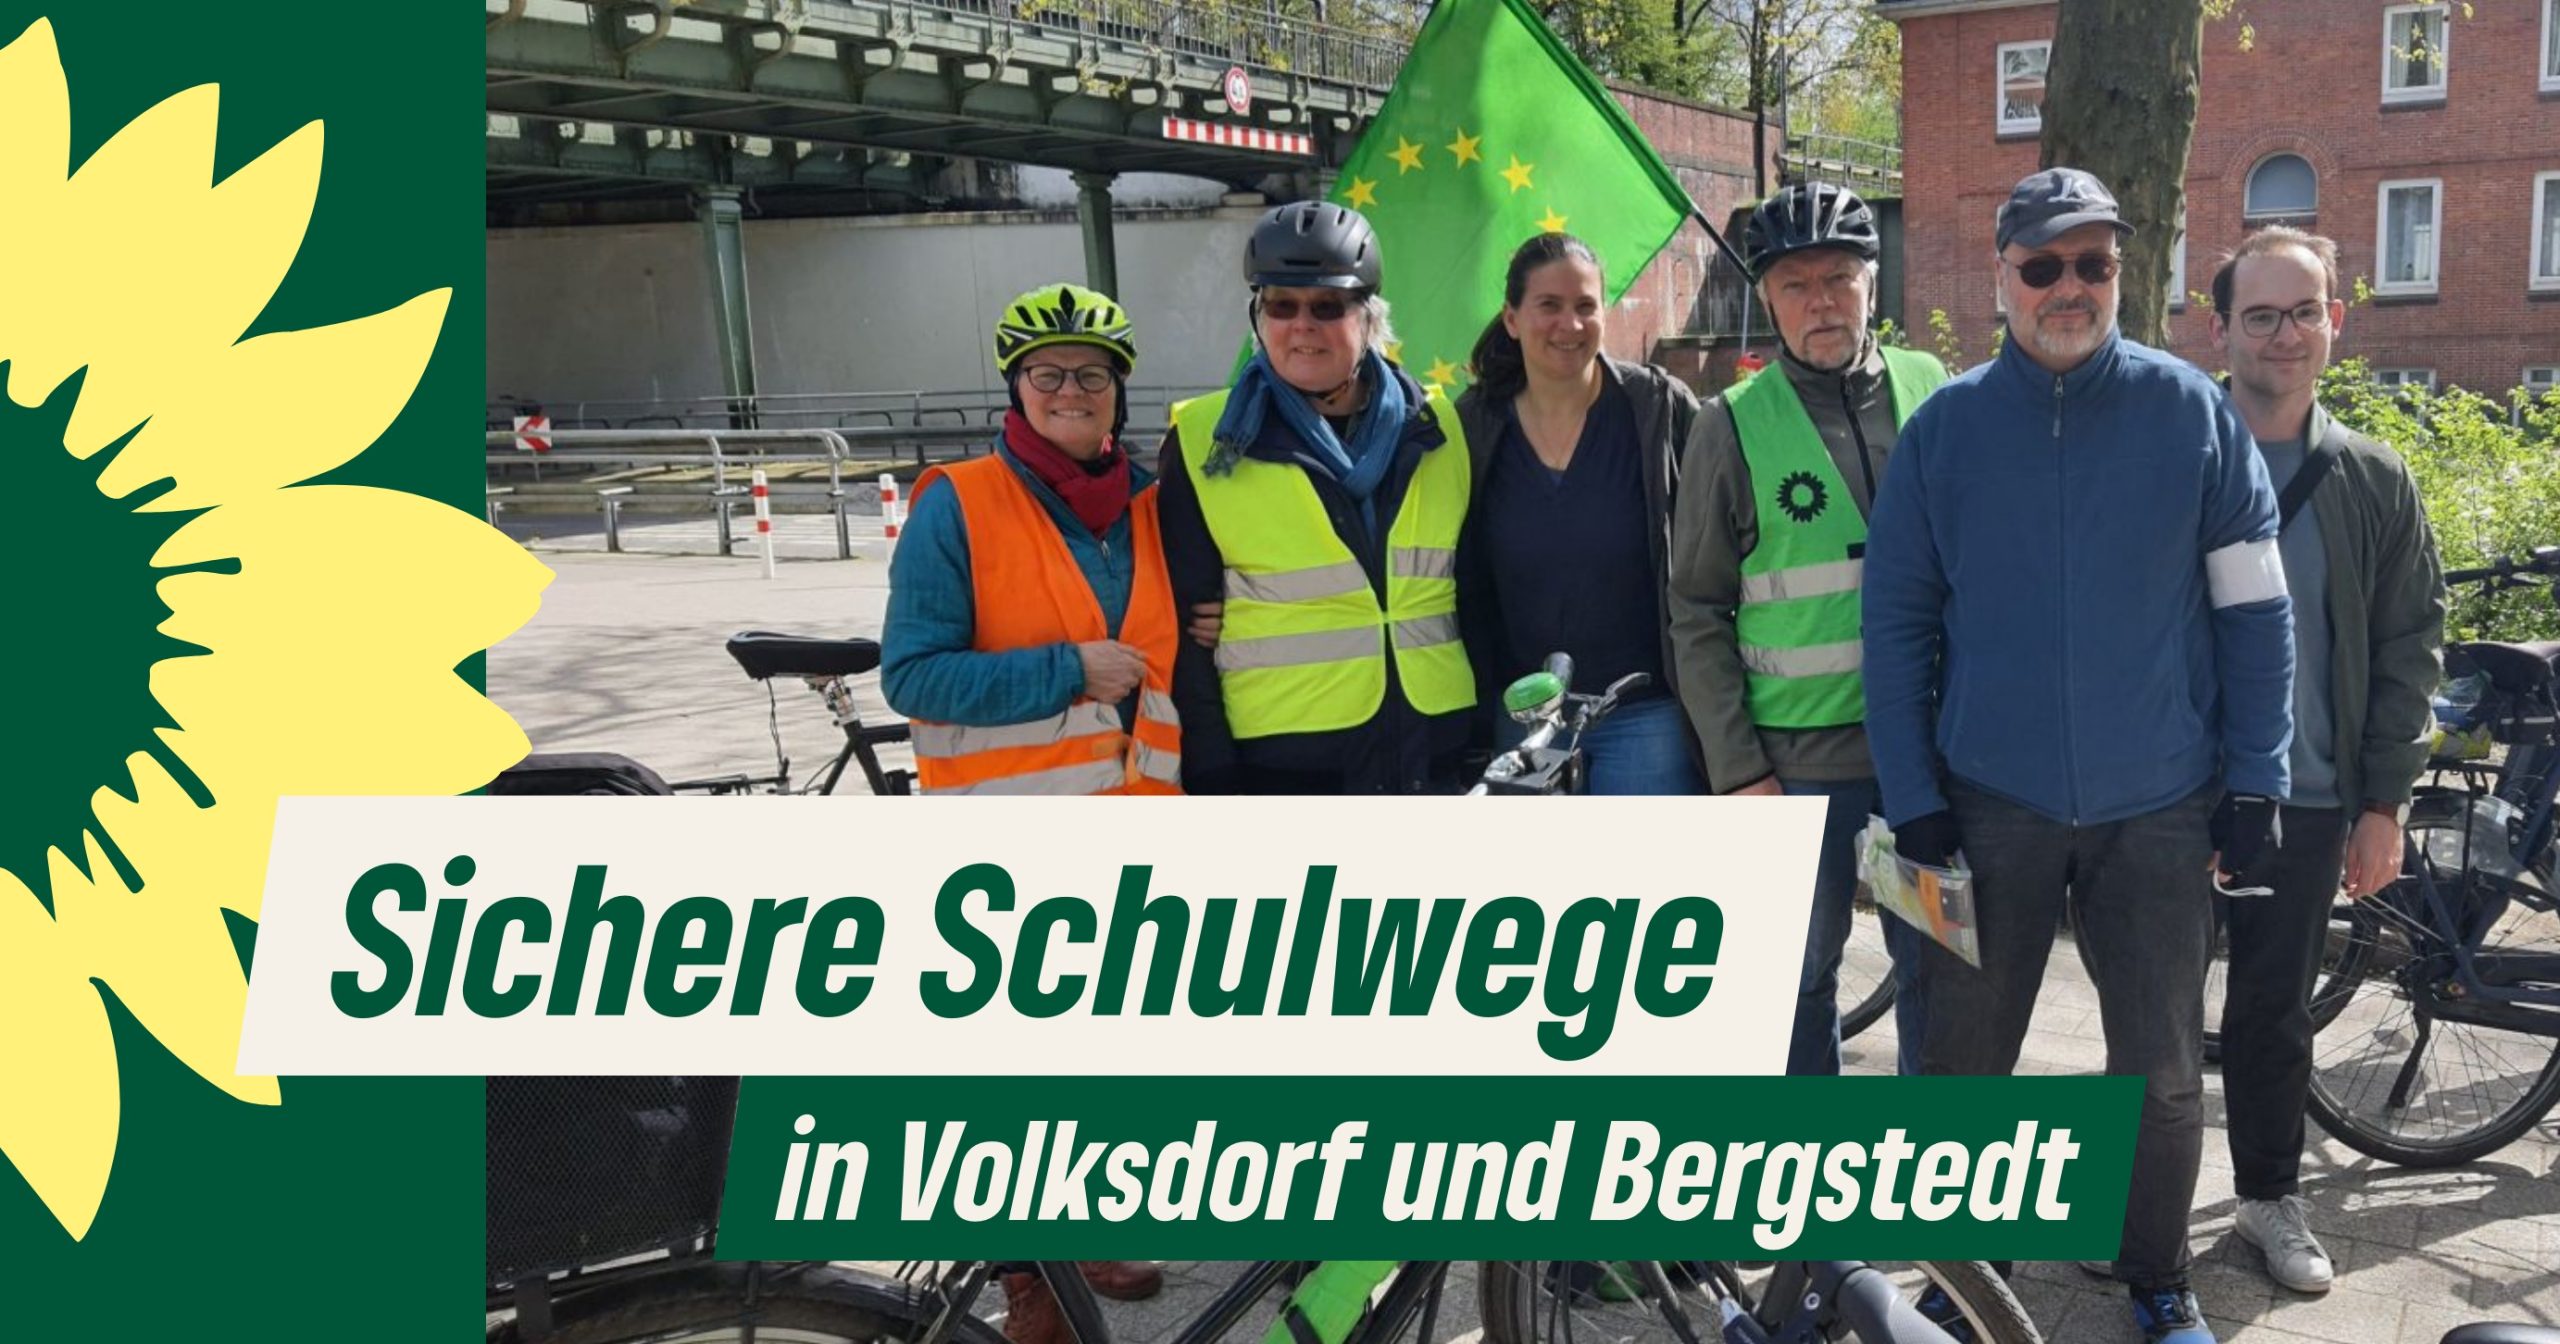 Eine Gruppe Fahrradfahrende davor der Text "Sichere Schulwege in Volksdorf und Bergstedt"